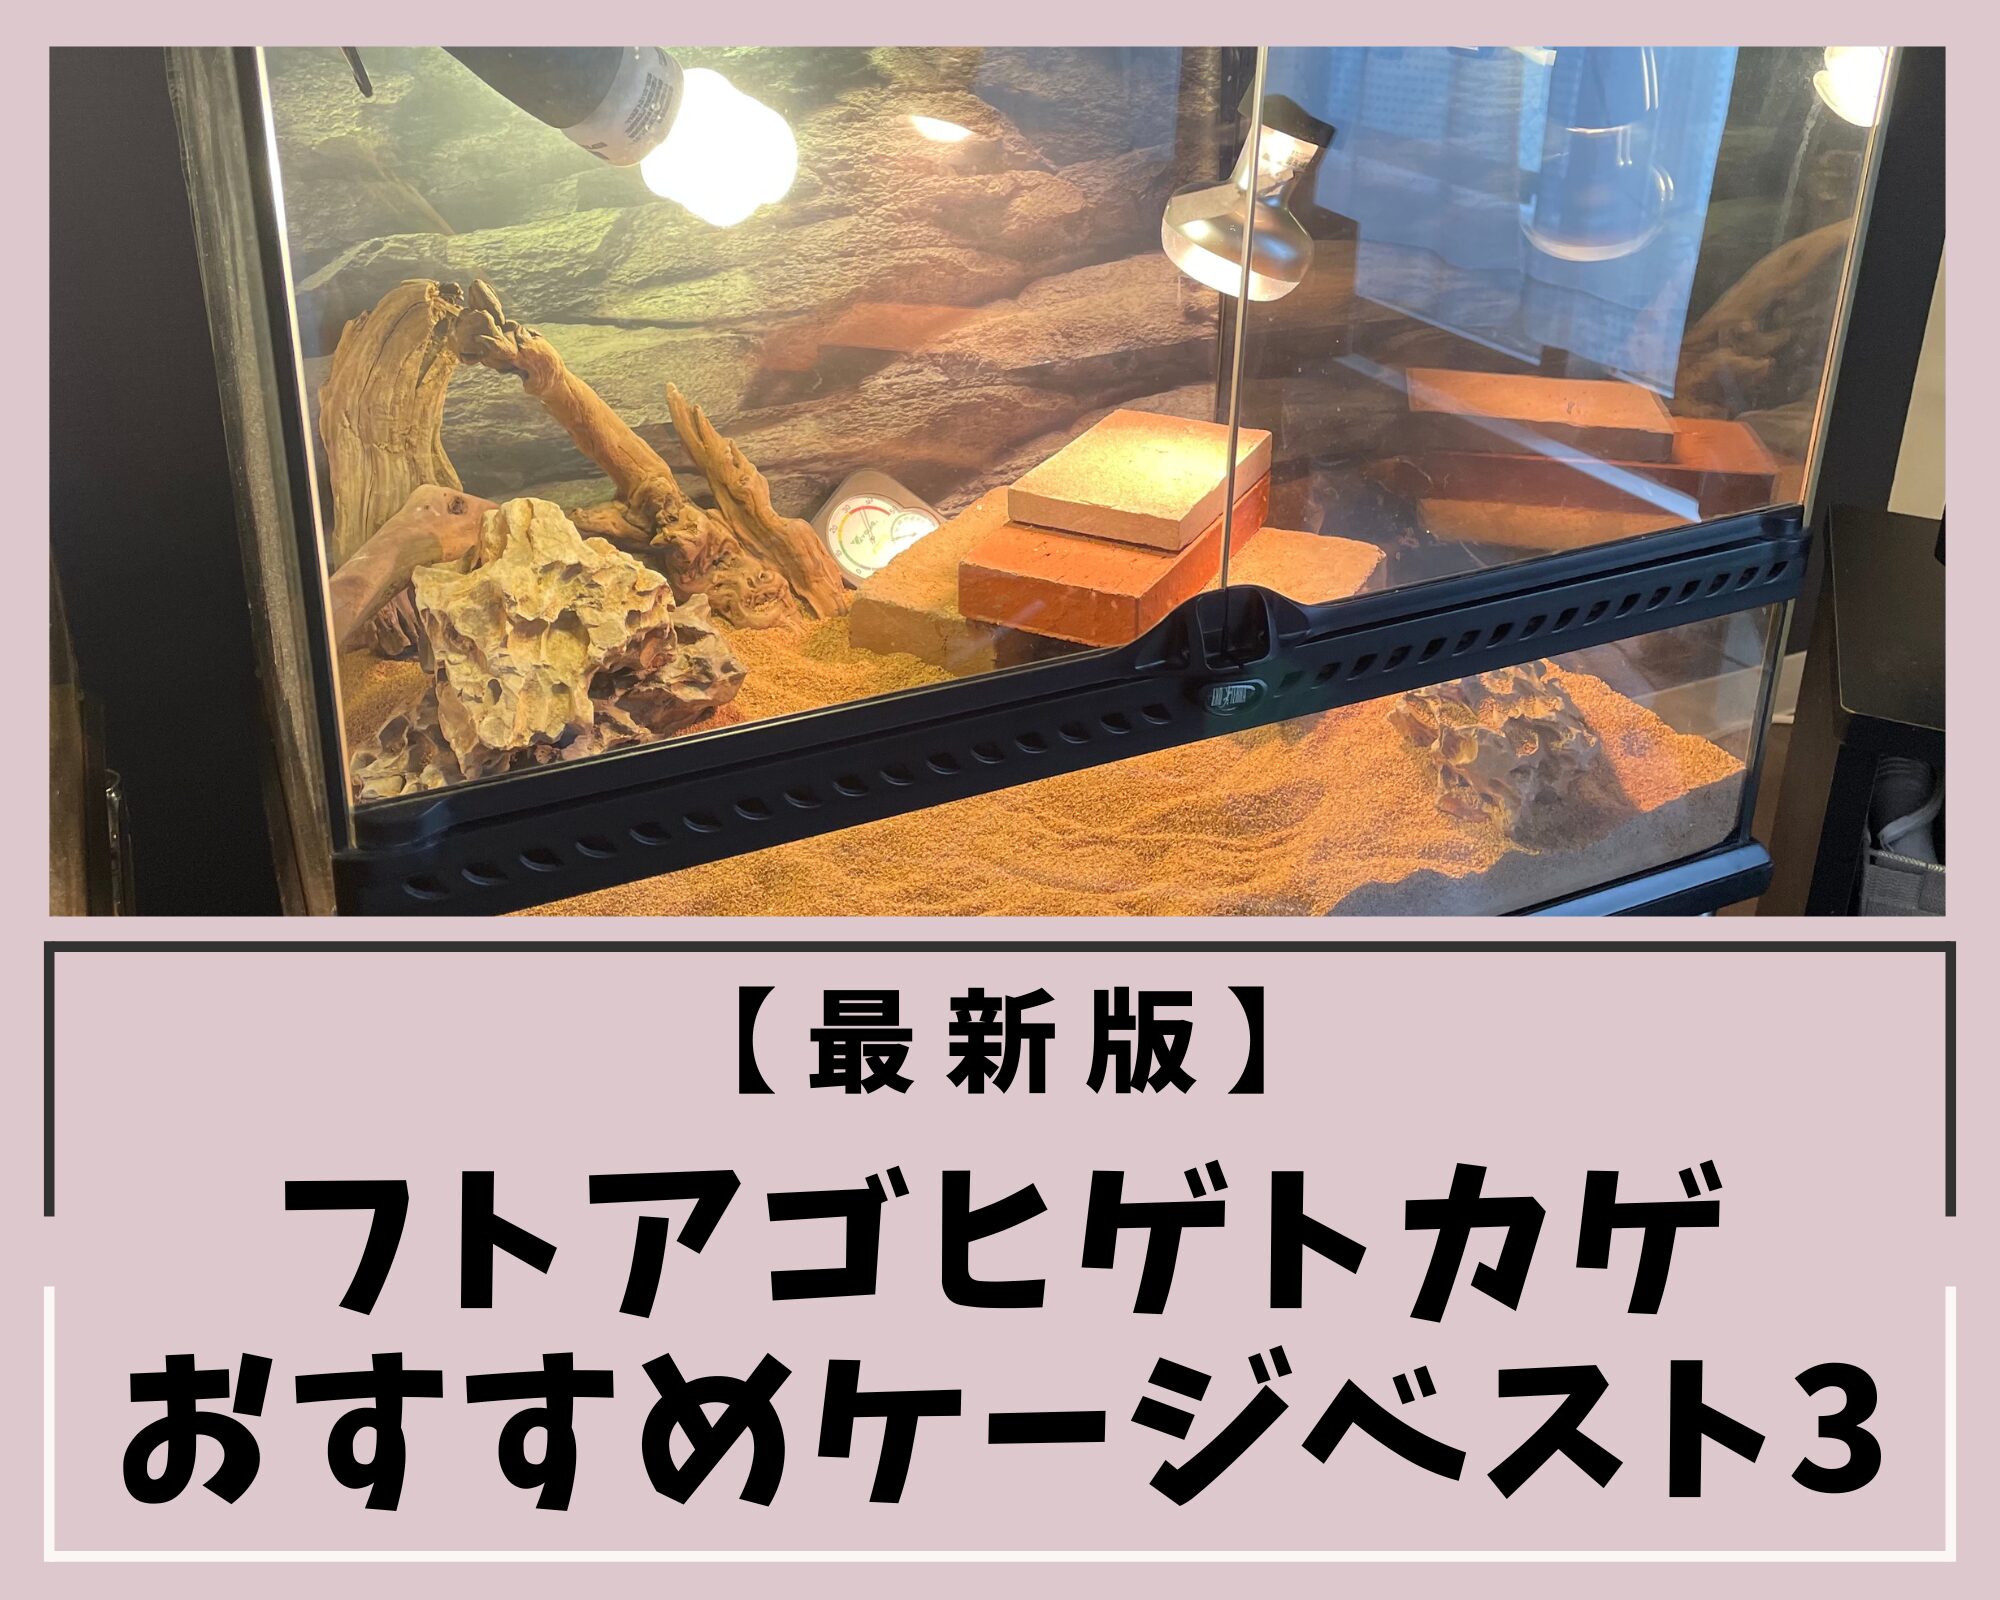 【最新版】フトアゴヒゲトカゲおすすめケージベスト3